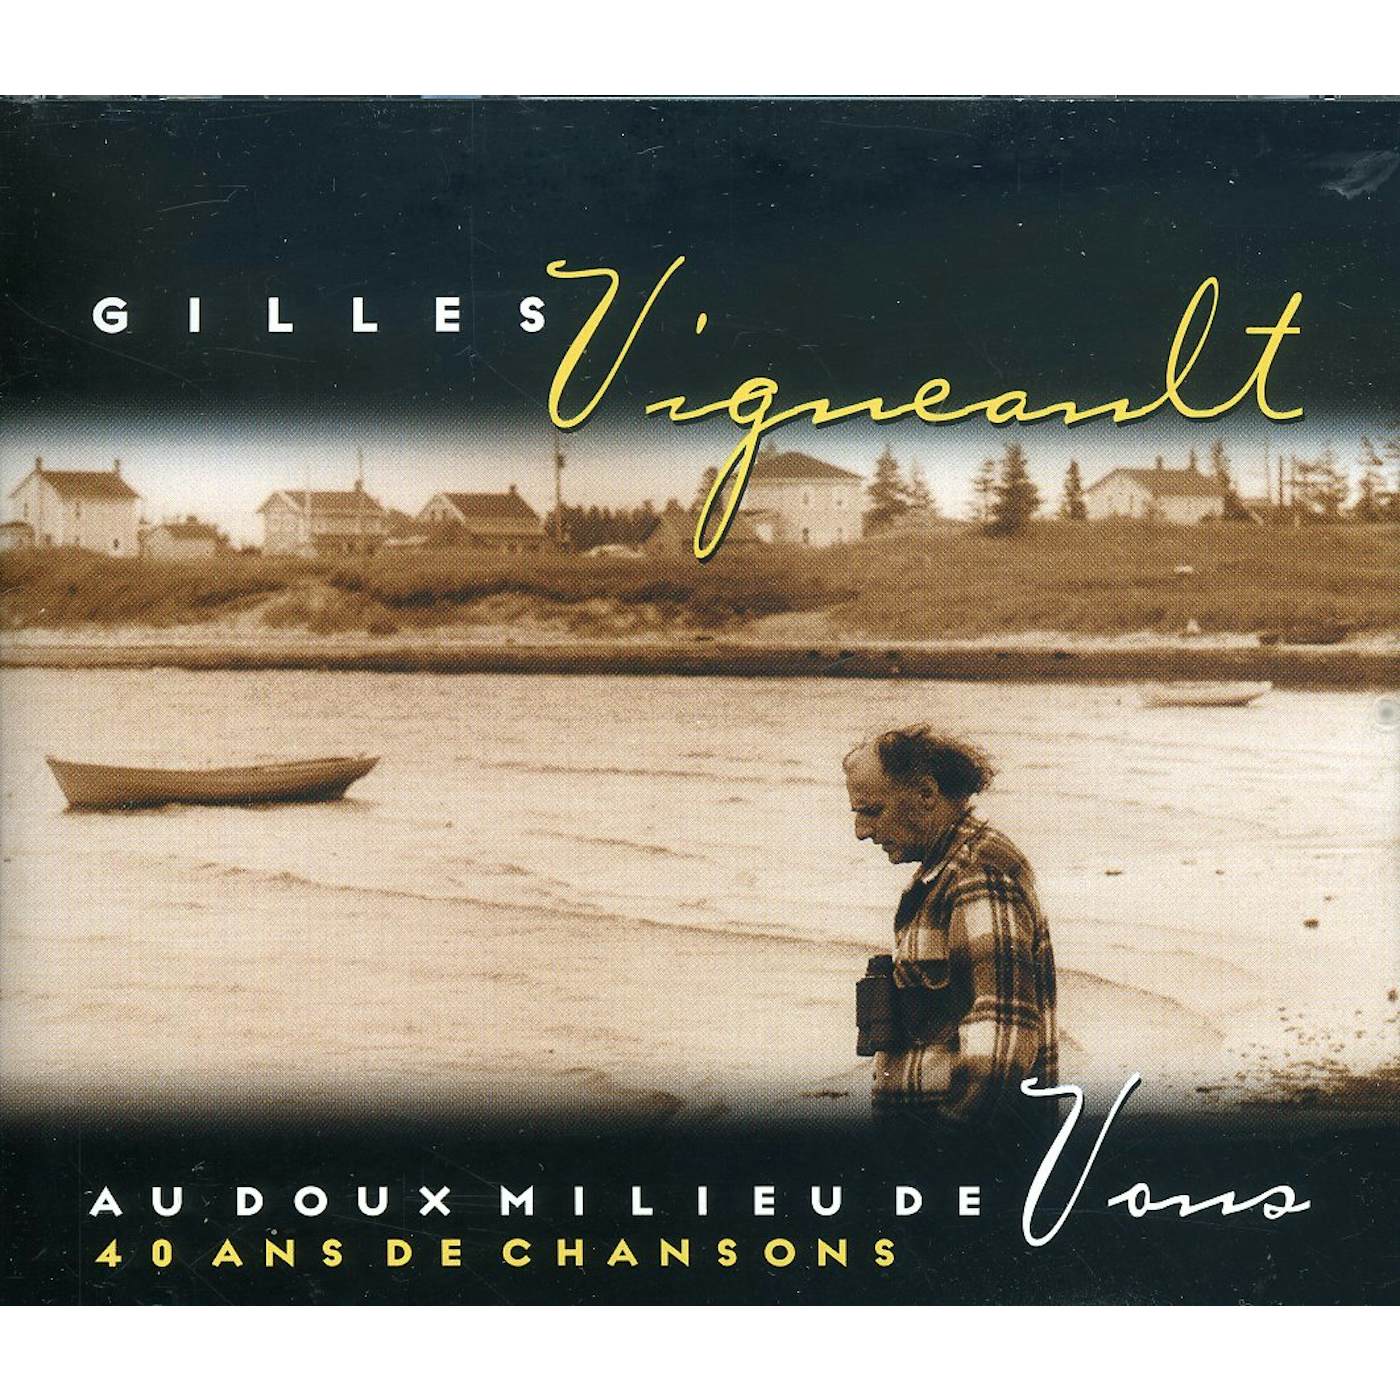 Gilles Vigneault AU DOUX MILIEU DE VOUS CD